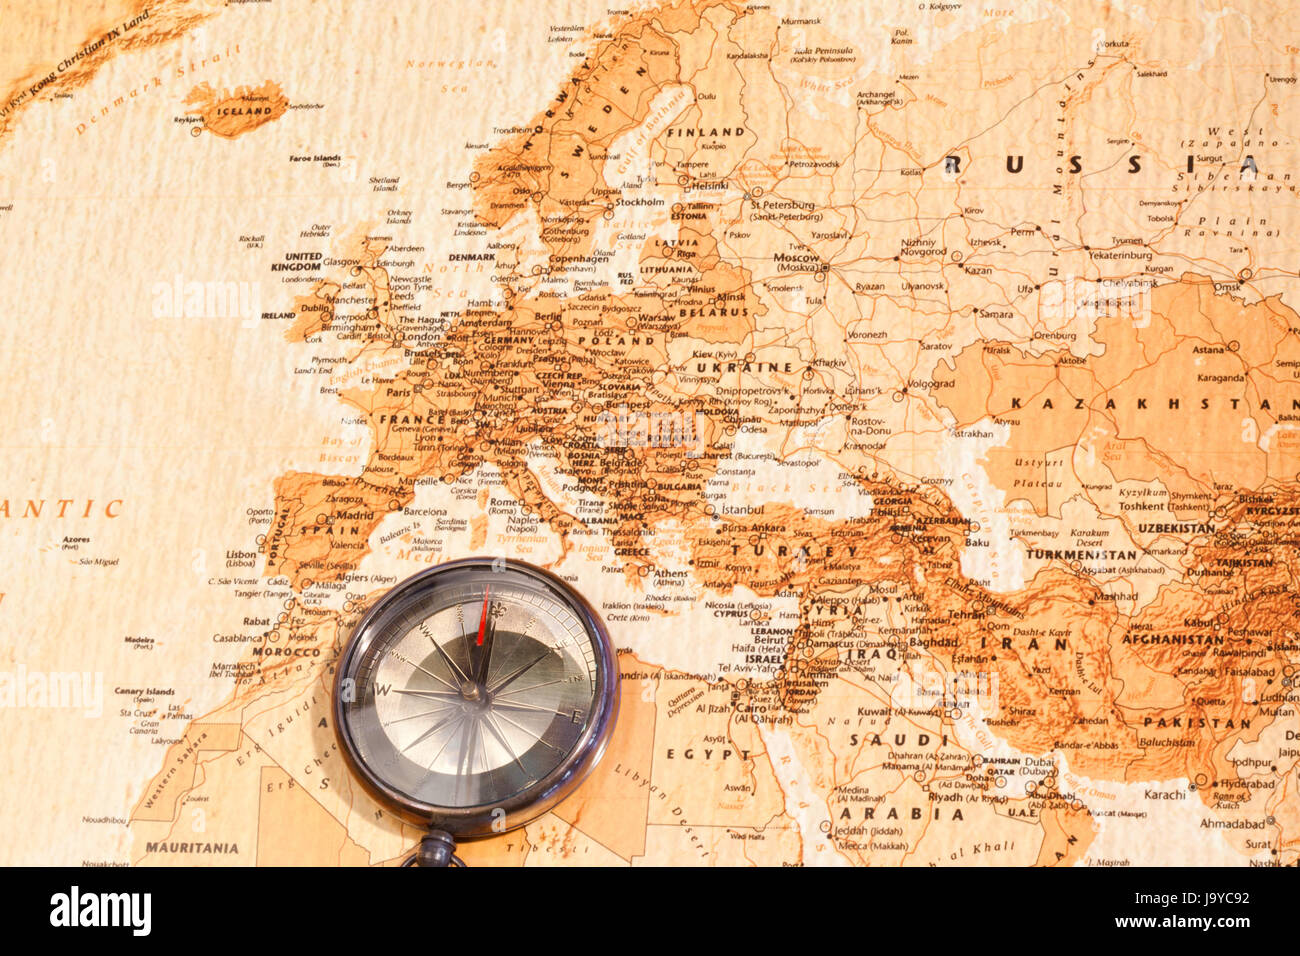 Weltkarte Mit Kompass Zeigt Europa Und Dem Nahen Osten Stockfotografie Alamy